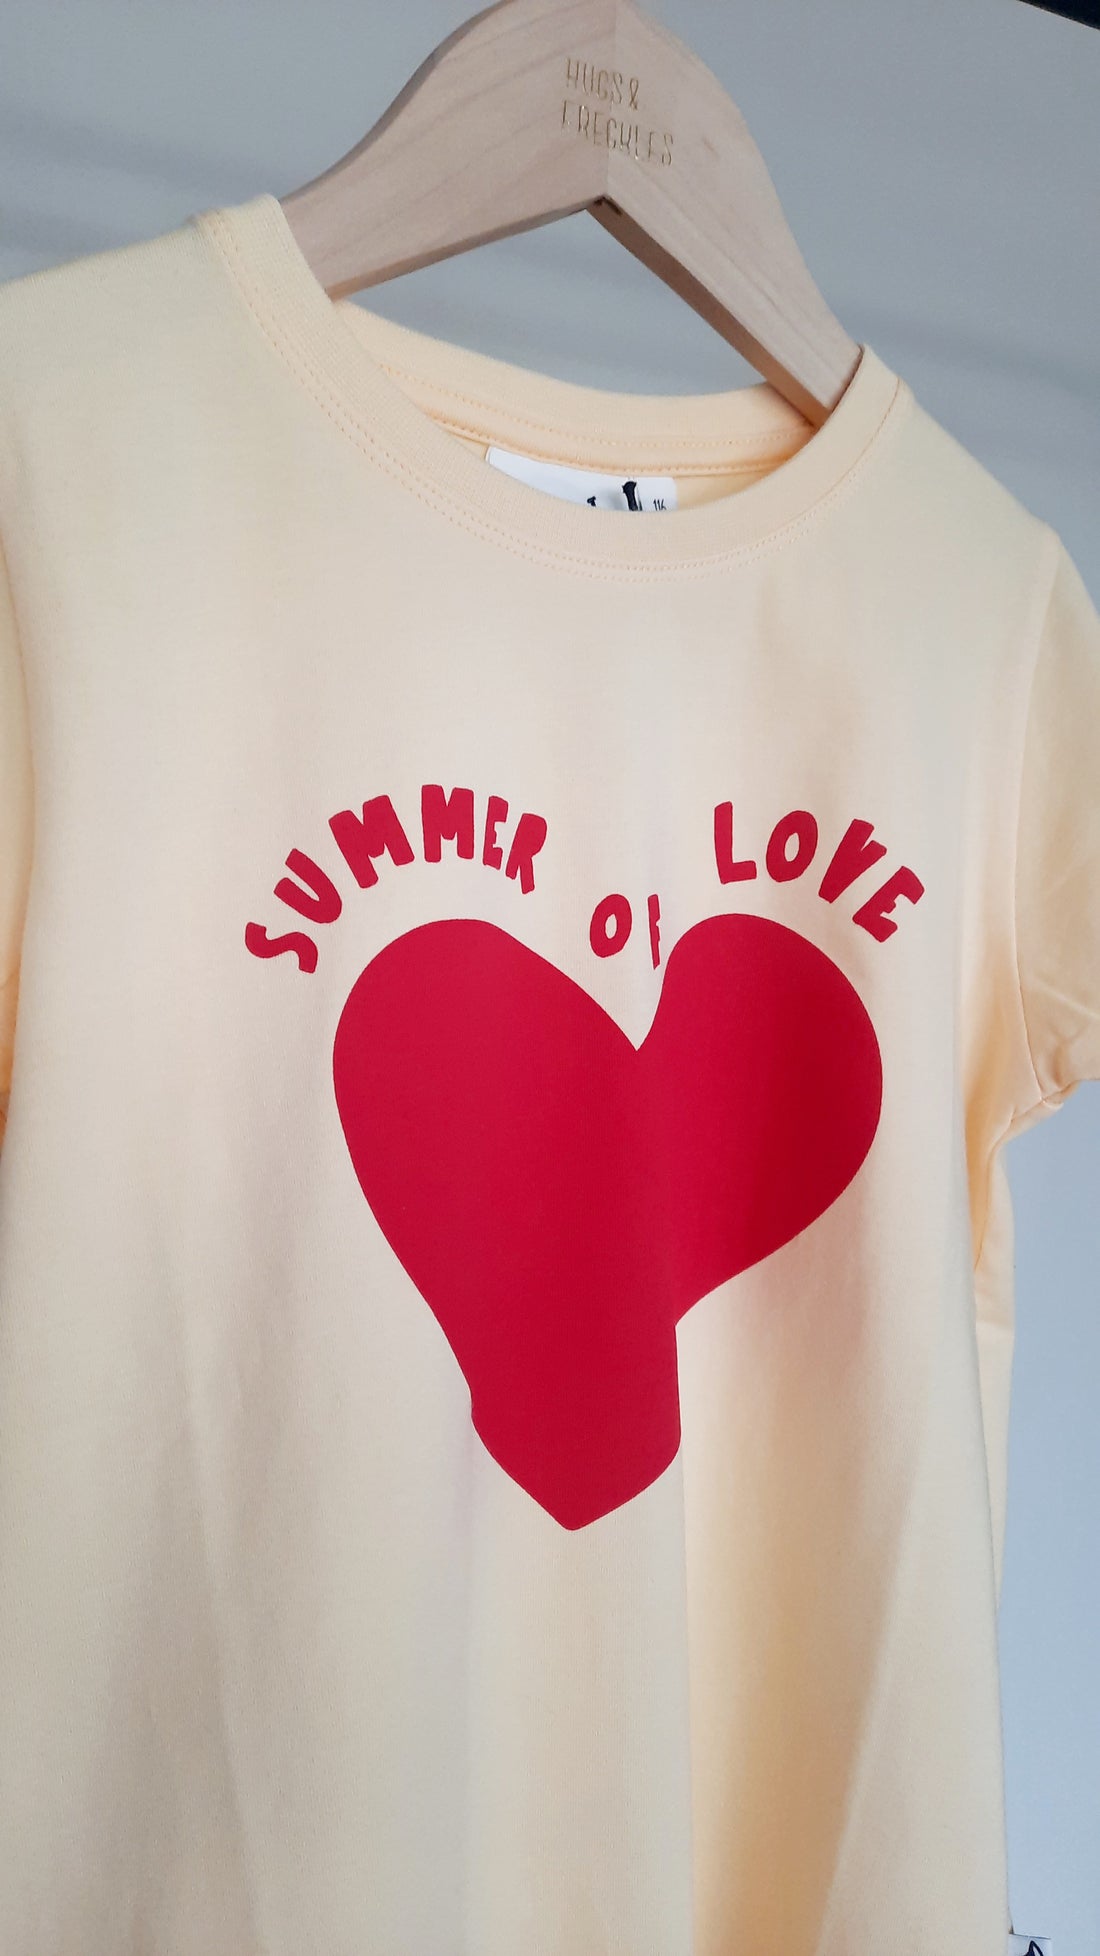 Organic T-Shirt - Summer of Love